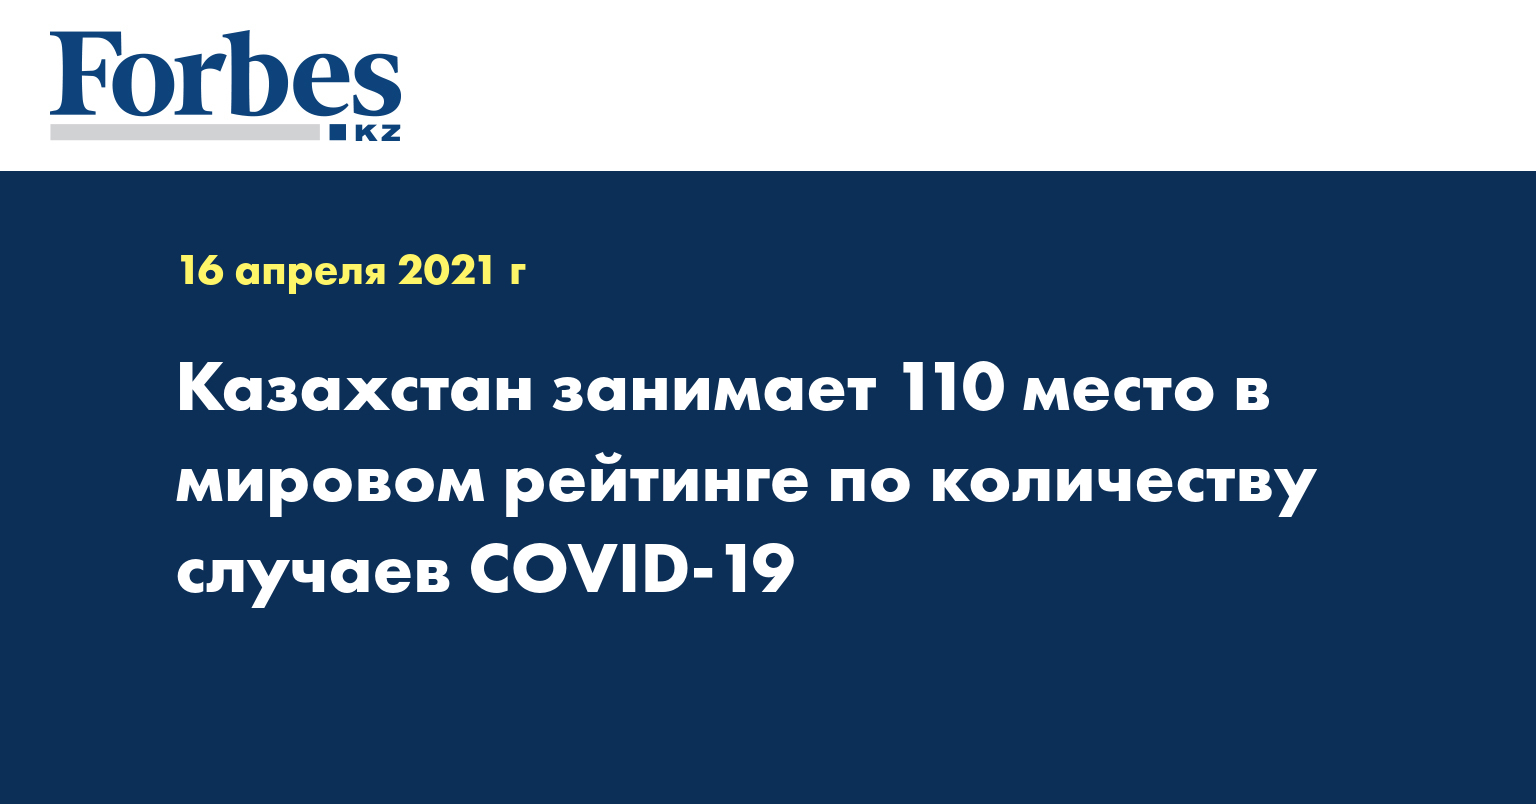 Казахстан занимает 110 место в мировом рейтинге по количеству случаев COVID-19